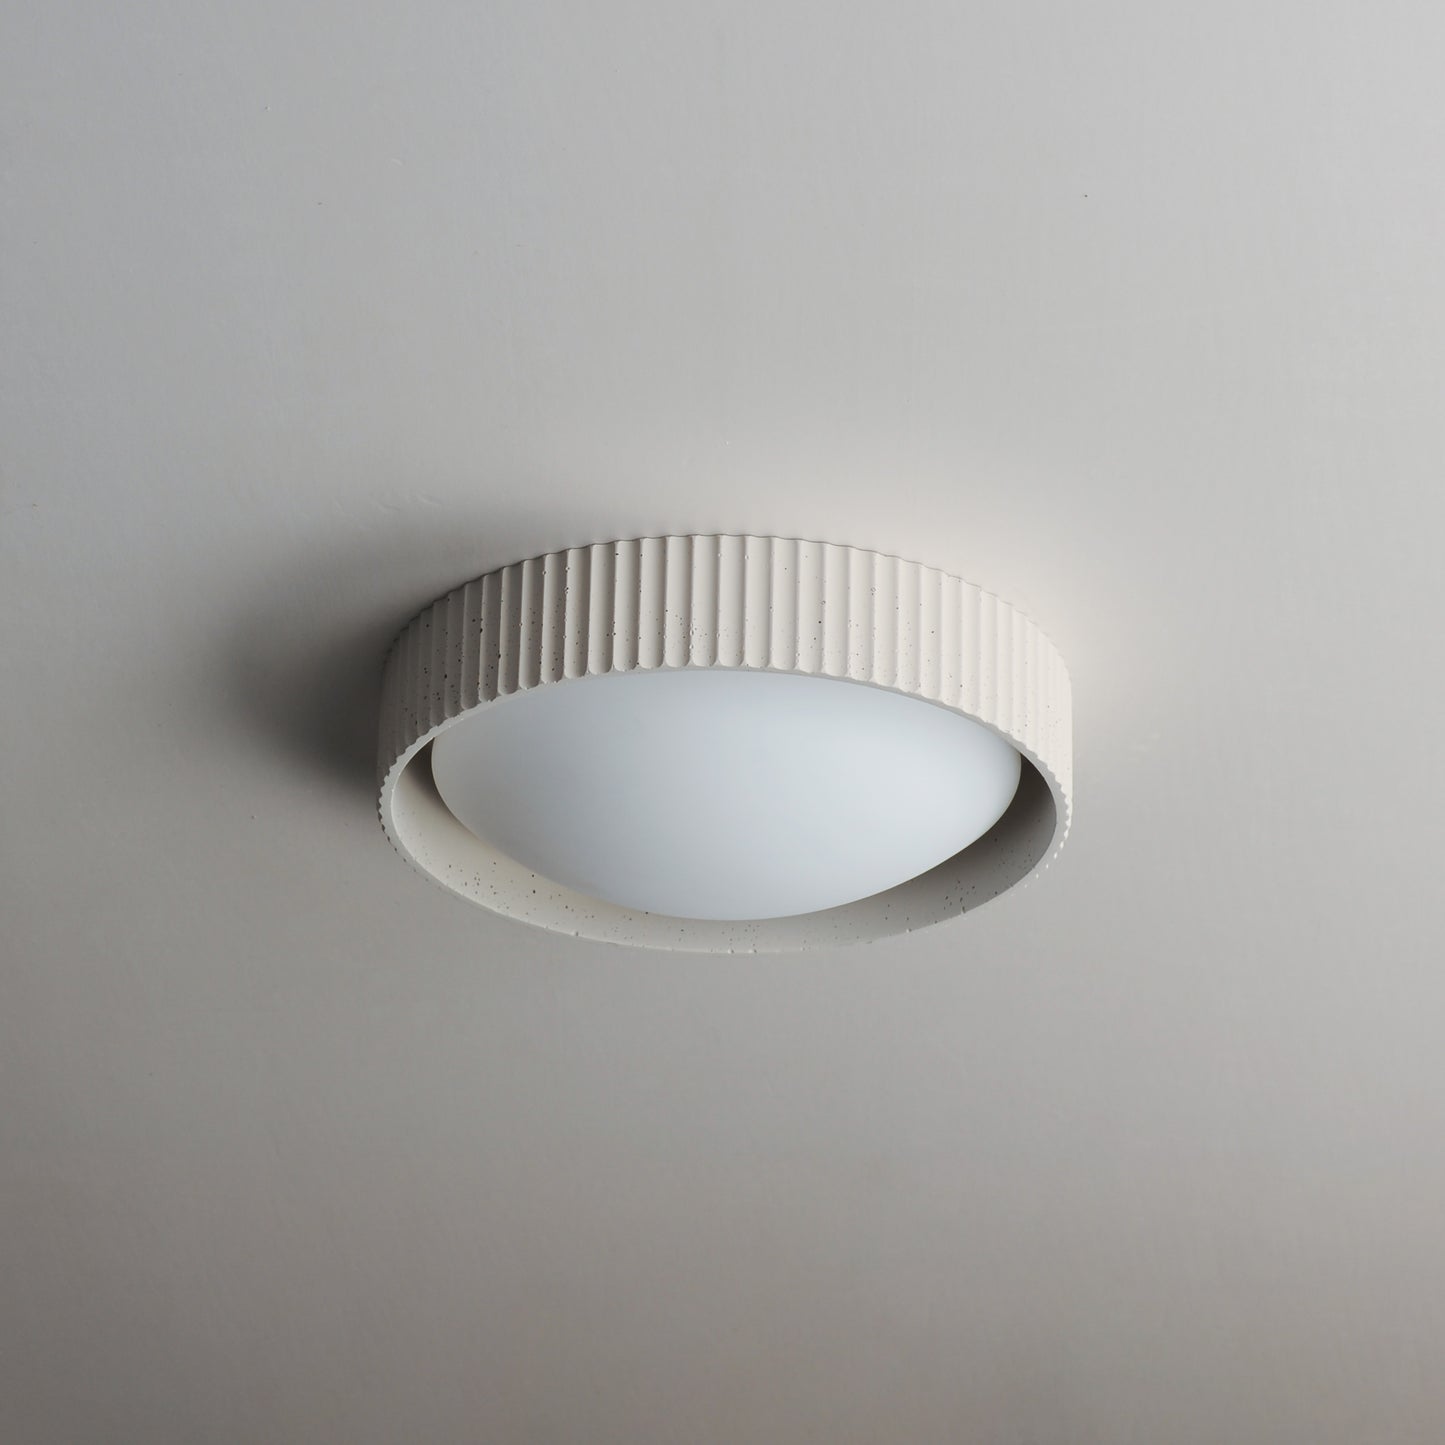 E25050-CHK - Souffle 11" Flush Mount Ceiling Light - Chaulk White